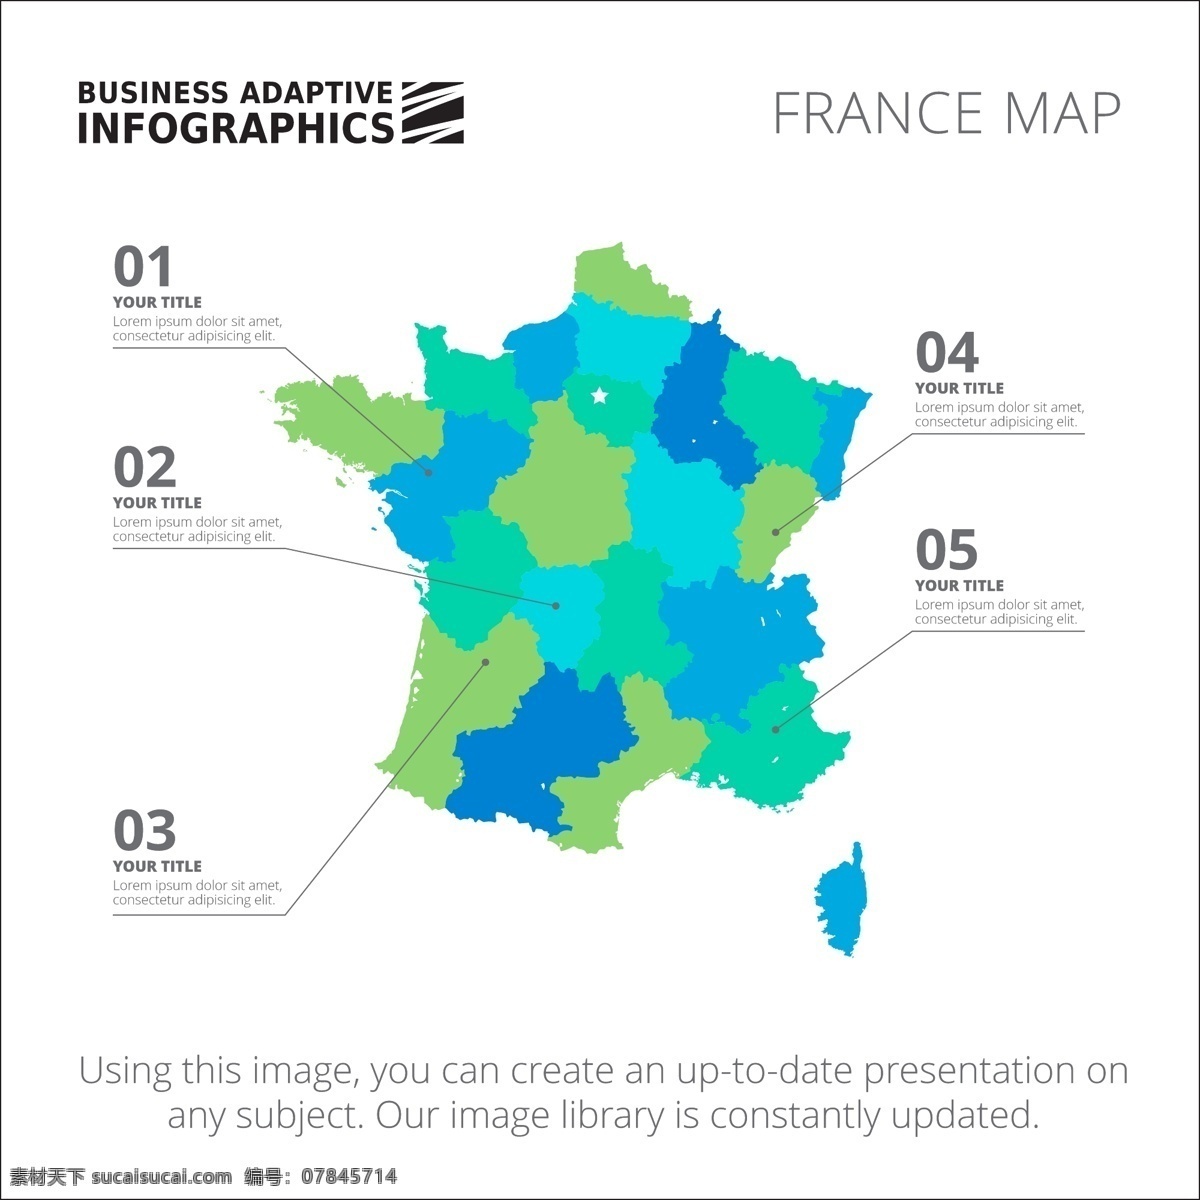 图表模板设计 图表 业务 地图 图形 模板 数字 信息 数据 要素 信息图表元素 法国 颜色 商业图表 infography 图表模板